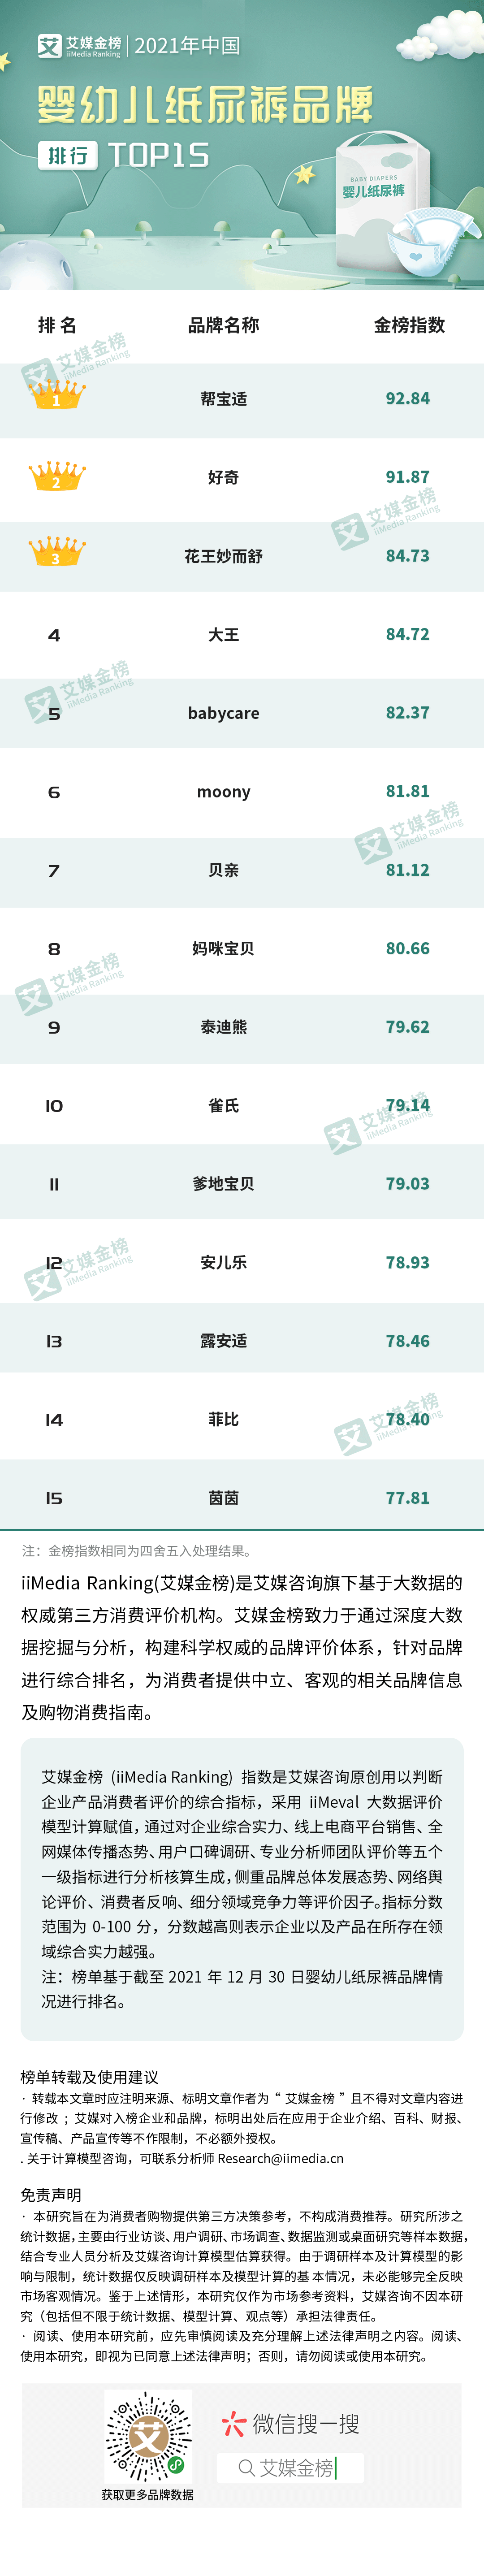 2021纸尿片排行榜10强_艾媒金榜|2021年中国婴幼儿纸尿裤品牌排行Top15